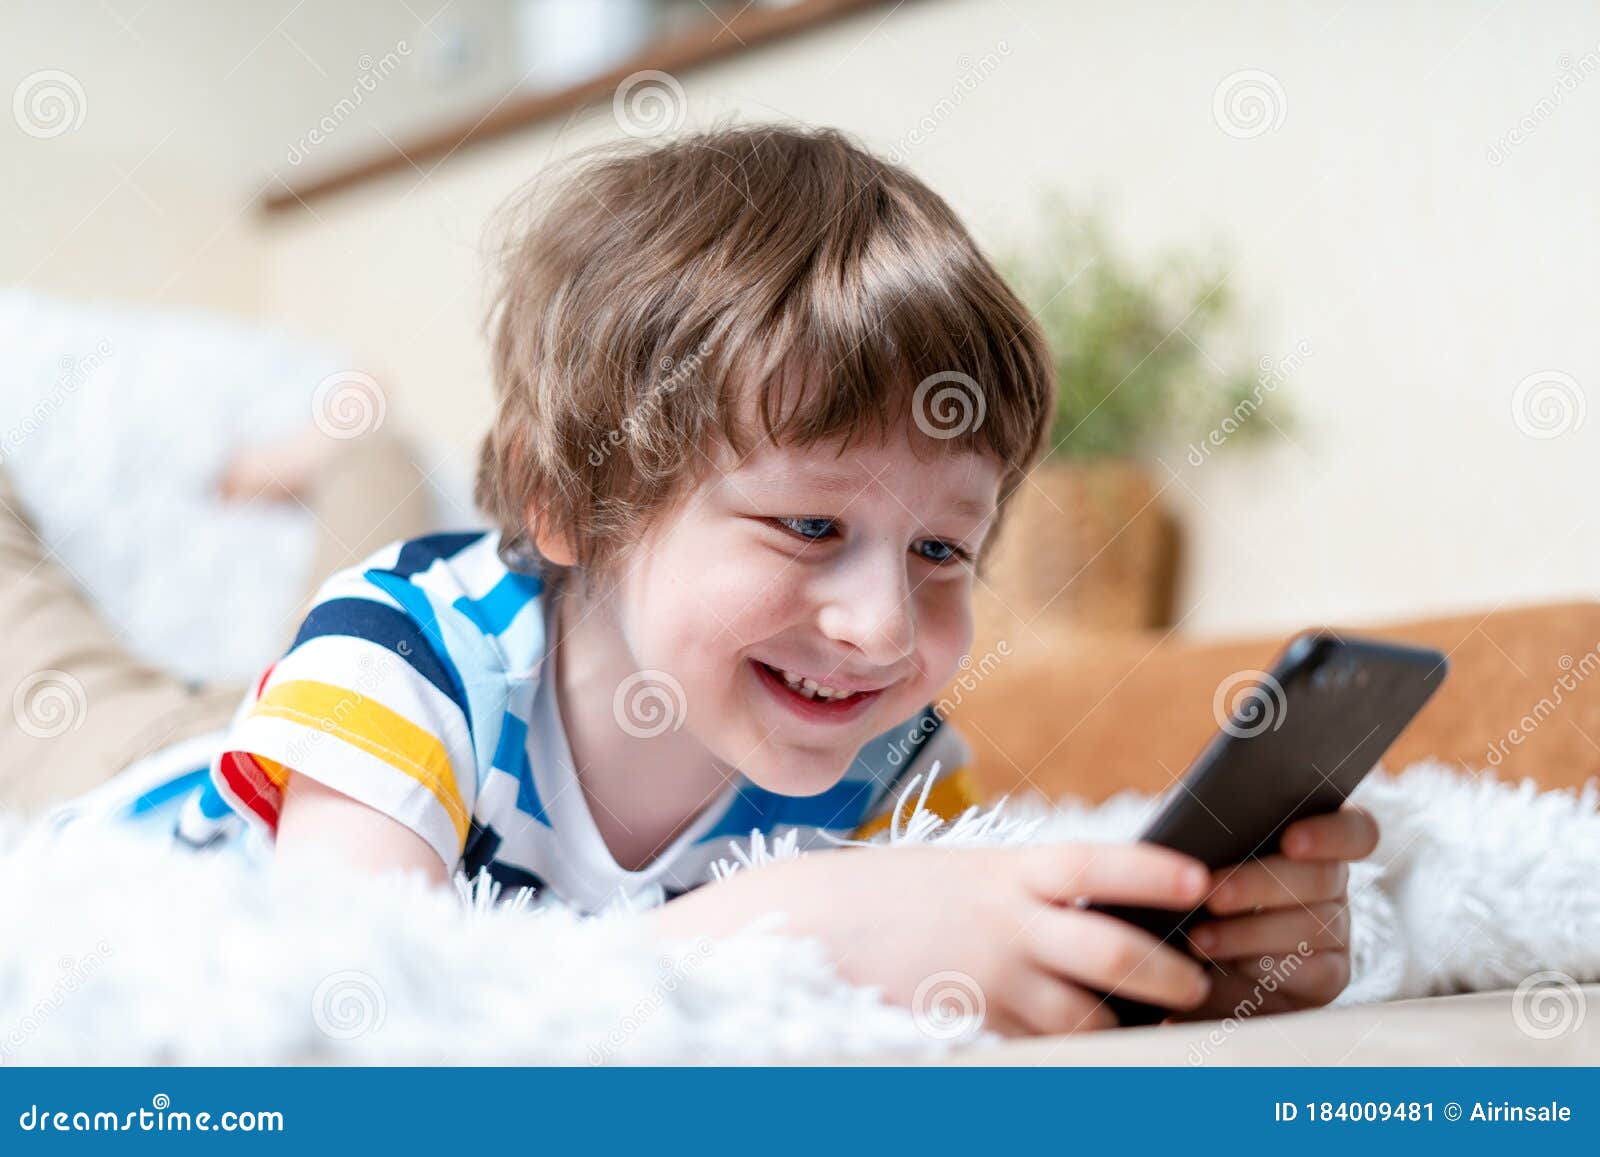 retrato menino jogando no celular enquanto espera por comida, garoto  sentado na cafeteria enviando texto para amigos, criança jogando jogo online  no celular. crianças com conceito de tecnologia 11248716 Foto de stock